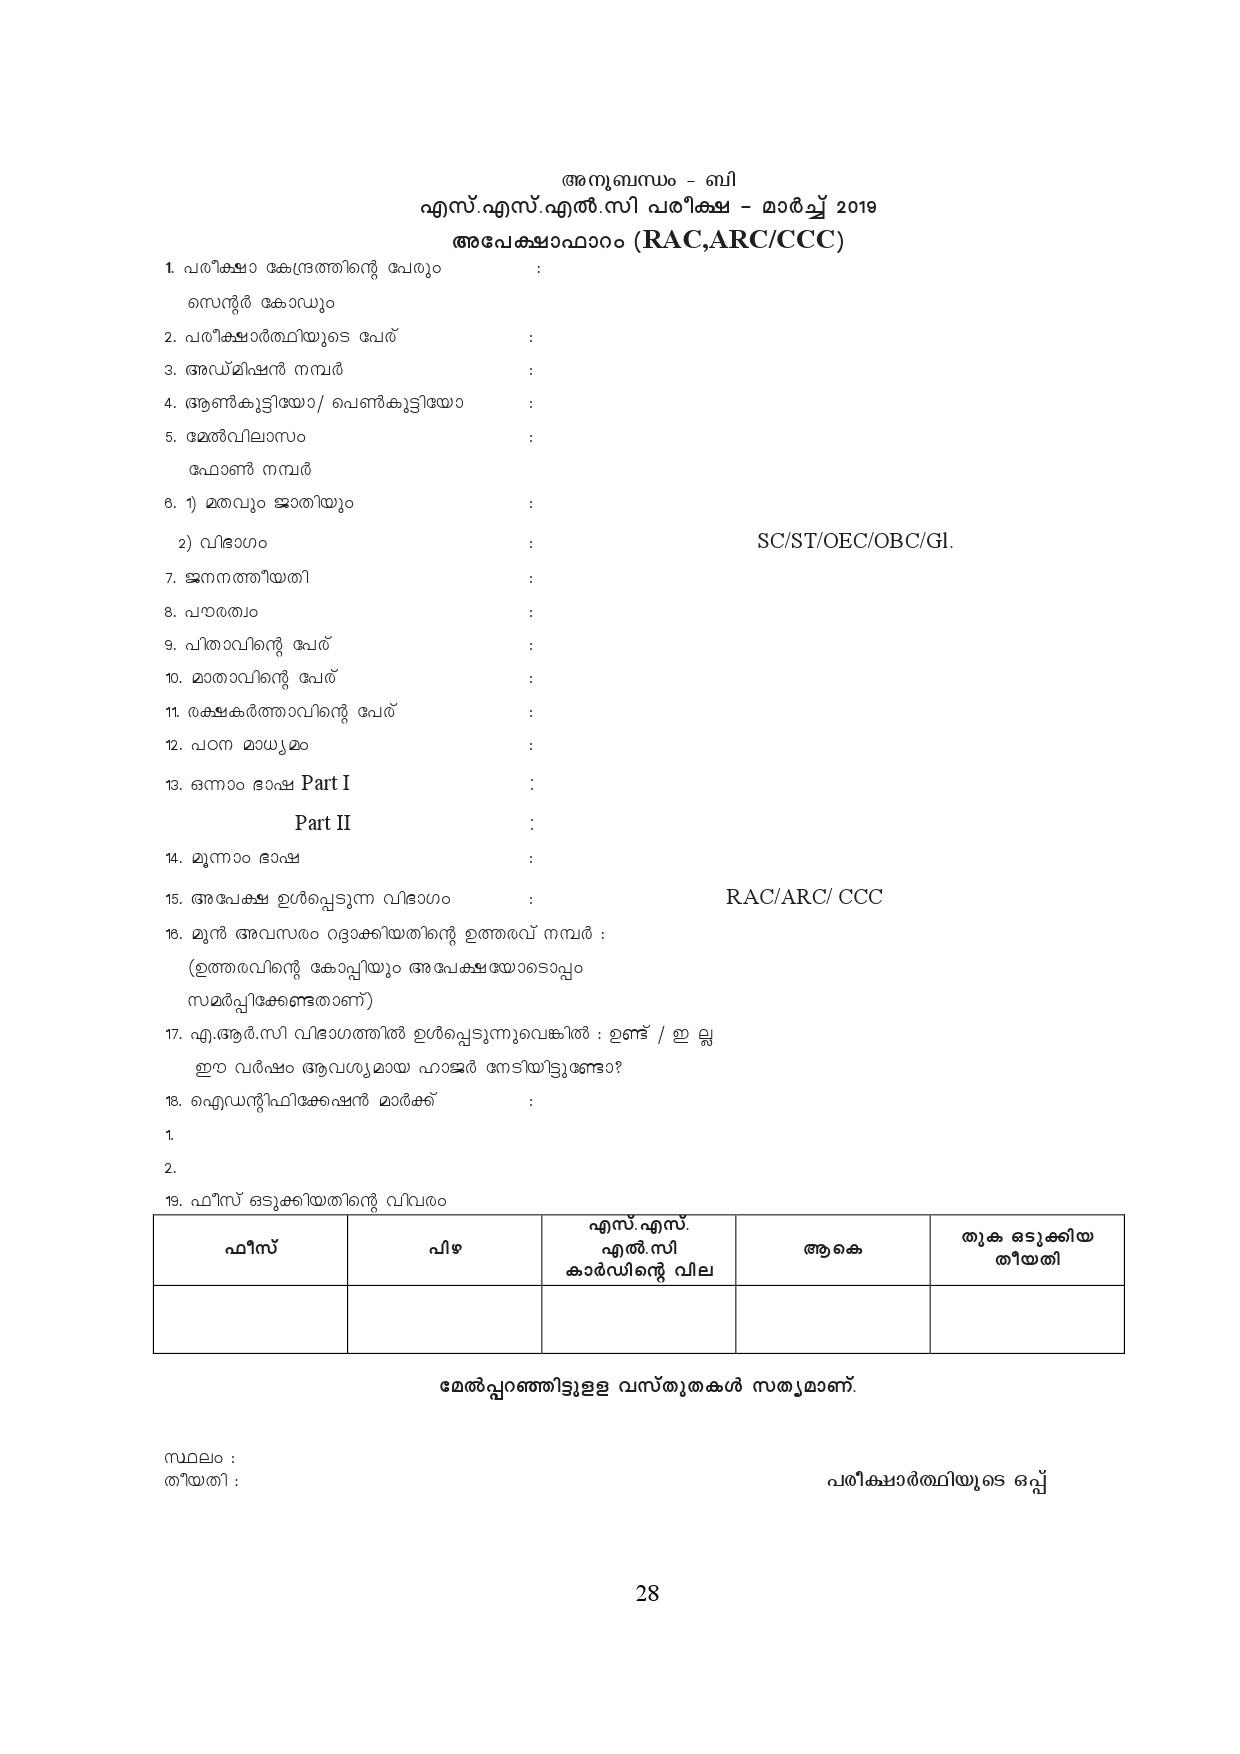 Kerala SSLC Exam Result 2019 - Notification Image 28